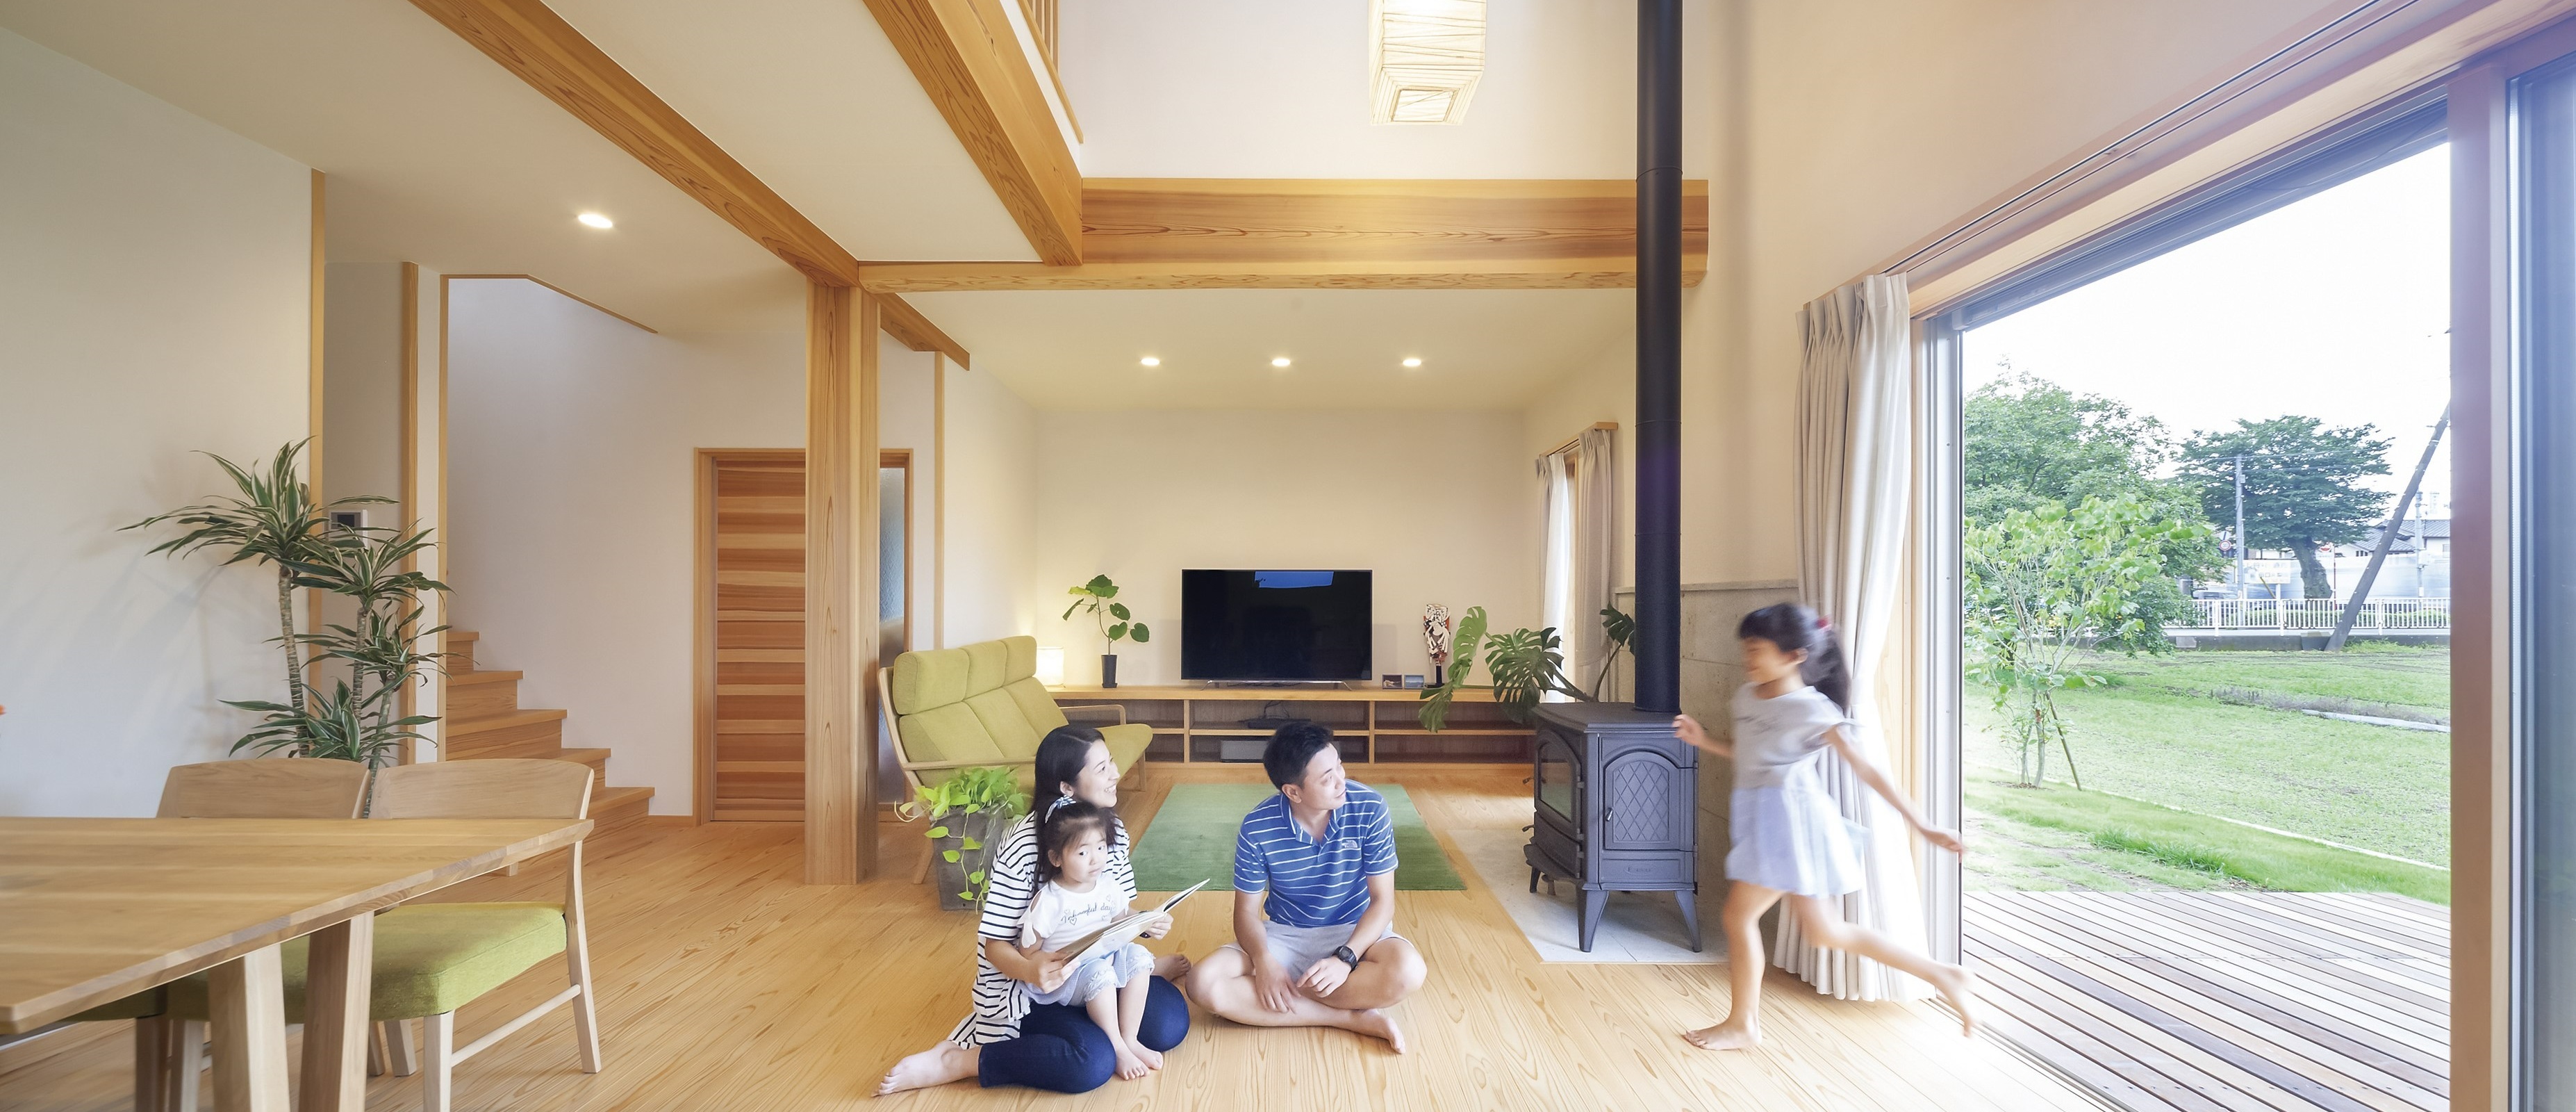 自然の力を活かすパッシブデザイン|埼玉で自然素材の注文住宅なら工務